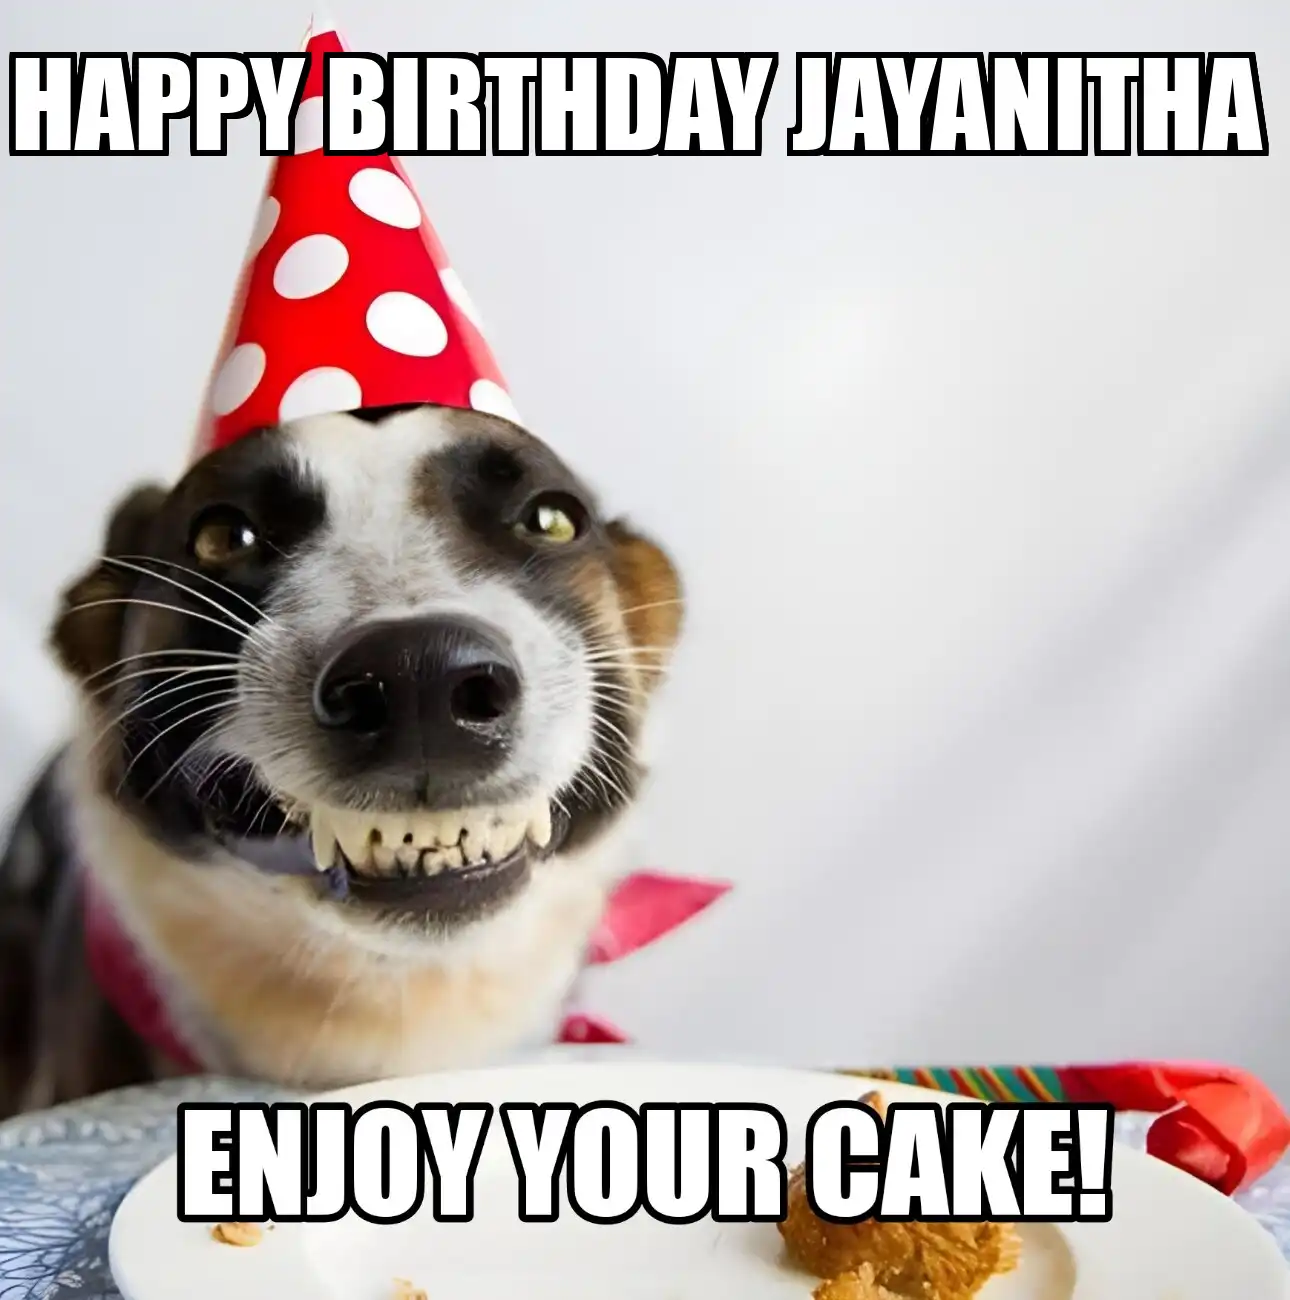 Happy Birthday Jayanitha Enjoy Your Cake Dog Meme